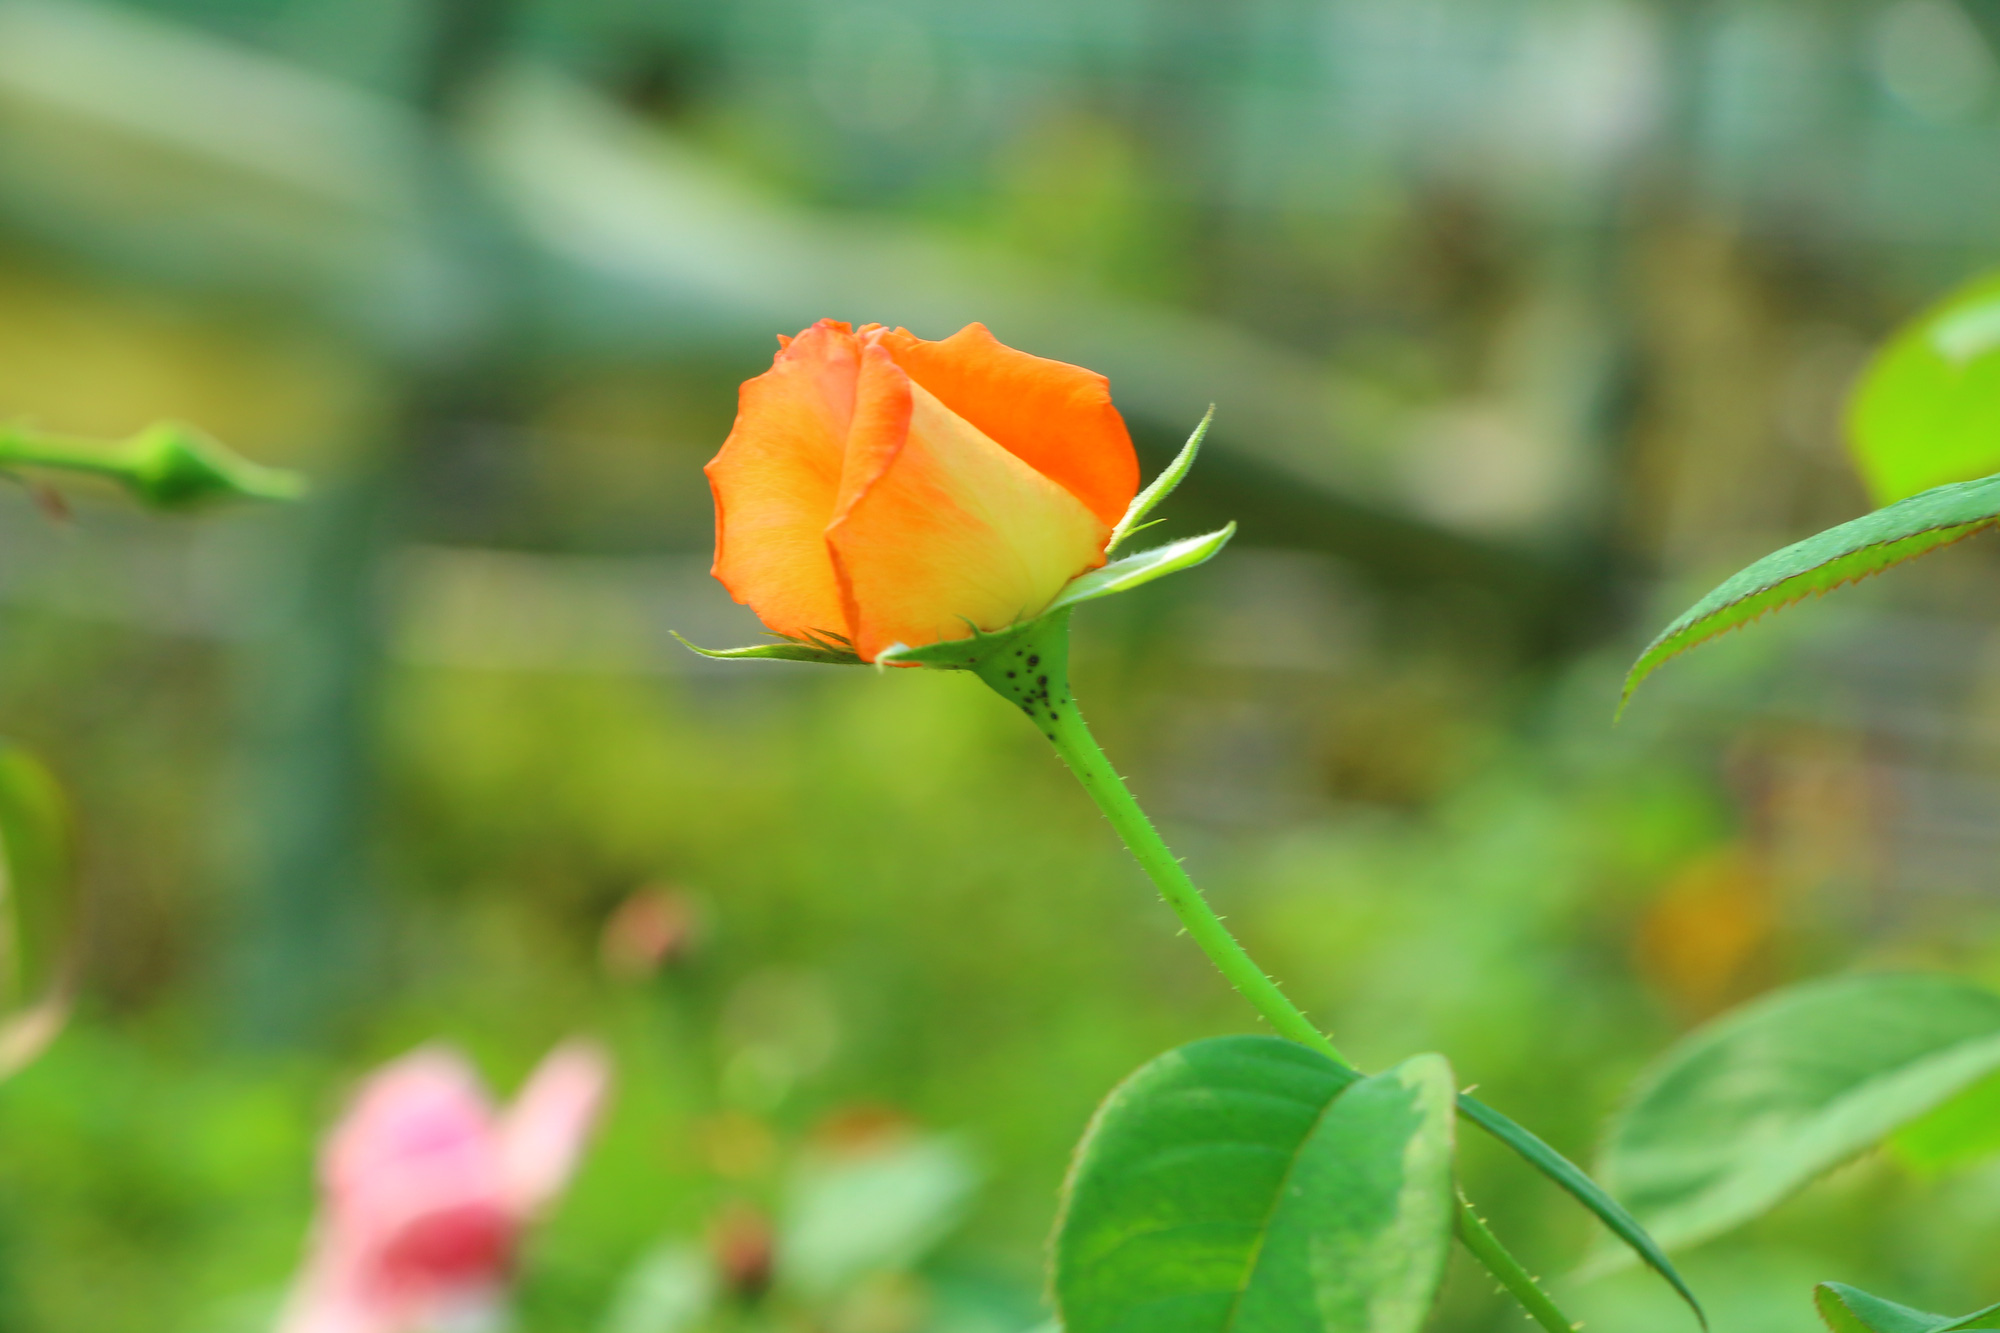 Hoa hồng Pháp – Loại hoa hồng Pháp luôn làm say đắm lòng người nhìn với sắc hồng độc đáo và hương thơm quyến rũ. Hãy thưởng thức vẻ đẹp sang trọng của hoa hồng Pháp trong hình ảnh này.